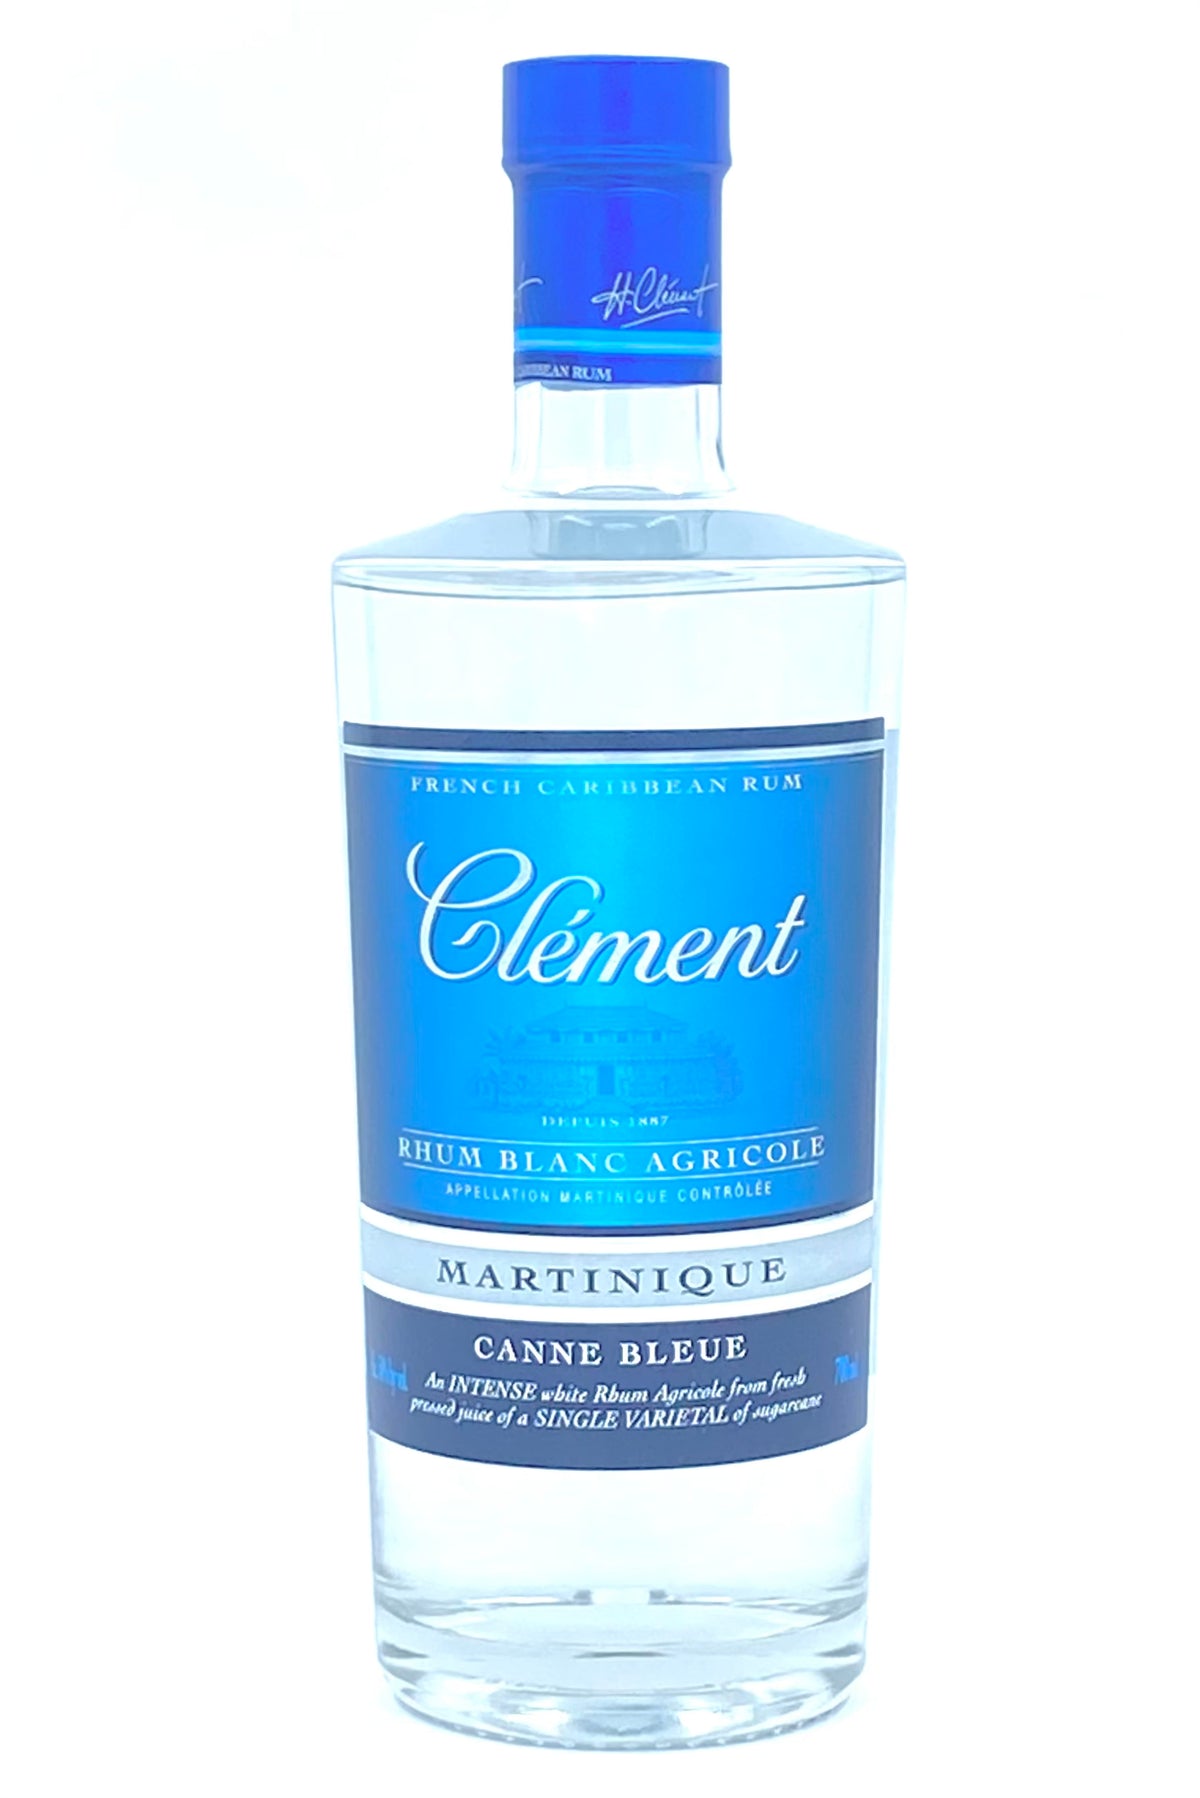 Rhum Clement Canne Bleue Rhum Blanc Agricole Martinique